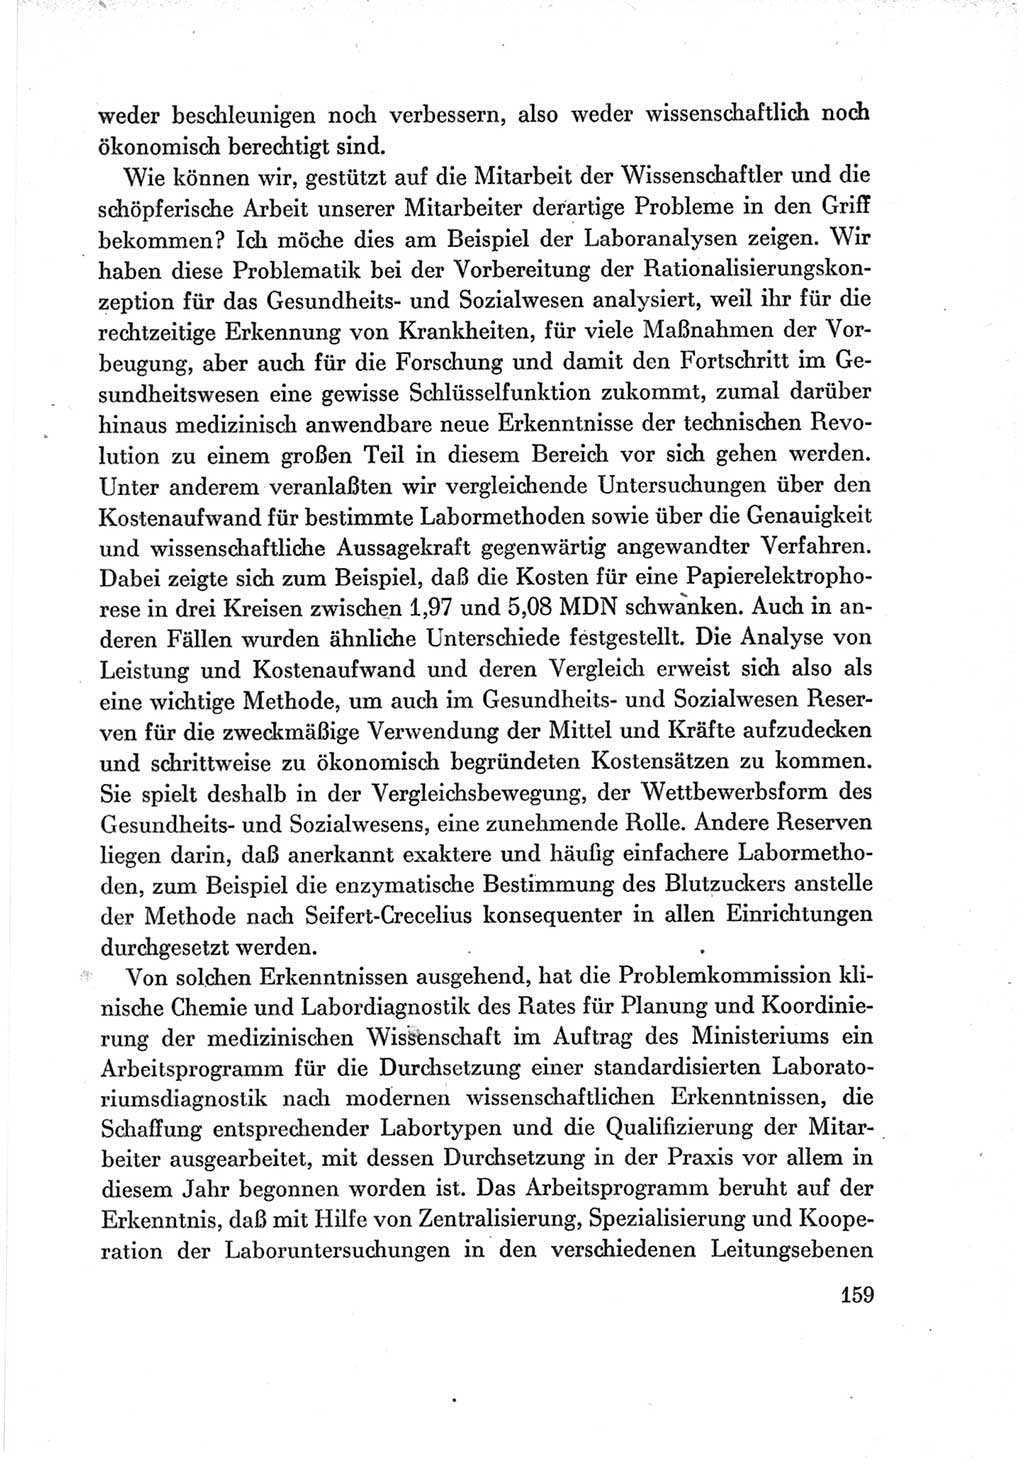 Protokoll der Verhandlungen des Ⅶ. Parteitages der Sozialistischen Einheitspartei Deutschlands (SED) [Deutsche Demokratische Republik (DDR)] 1967, Band Ⅲ, Seite 159 (Prot. Verh. Ⅶ. PT SED DDR 1967, Bd. Ⅲ, S. 159)